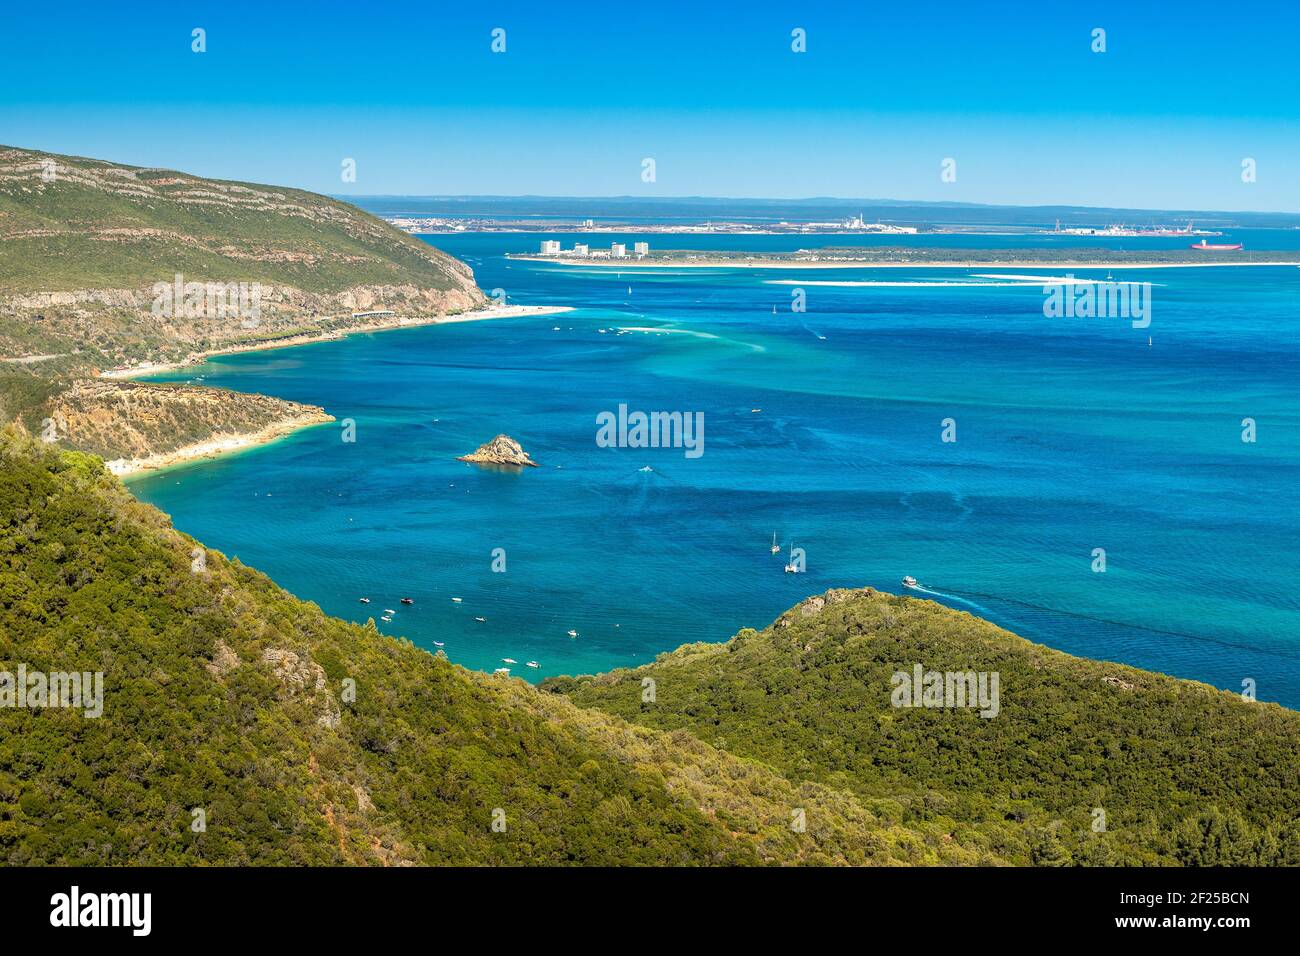 Magnifique paysage du Parc naturel d'Arrábida au Portugal, avec les montagnes, les plages, la mer bleue et en arrière-plan la péninsule de Toria. Banque D'Images